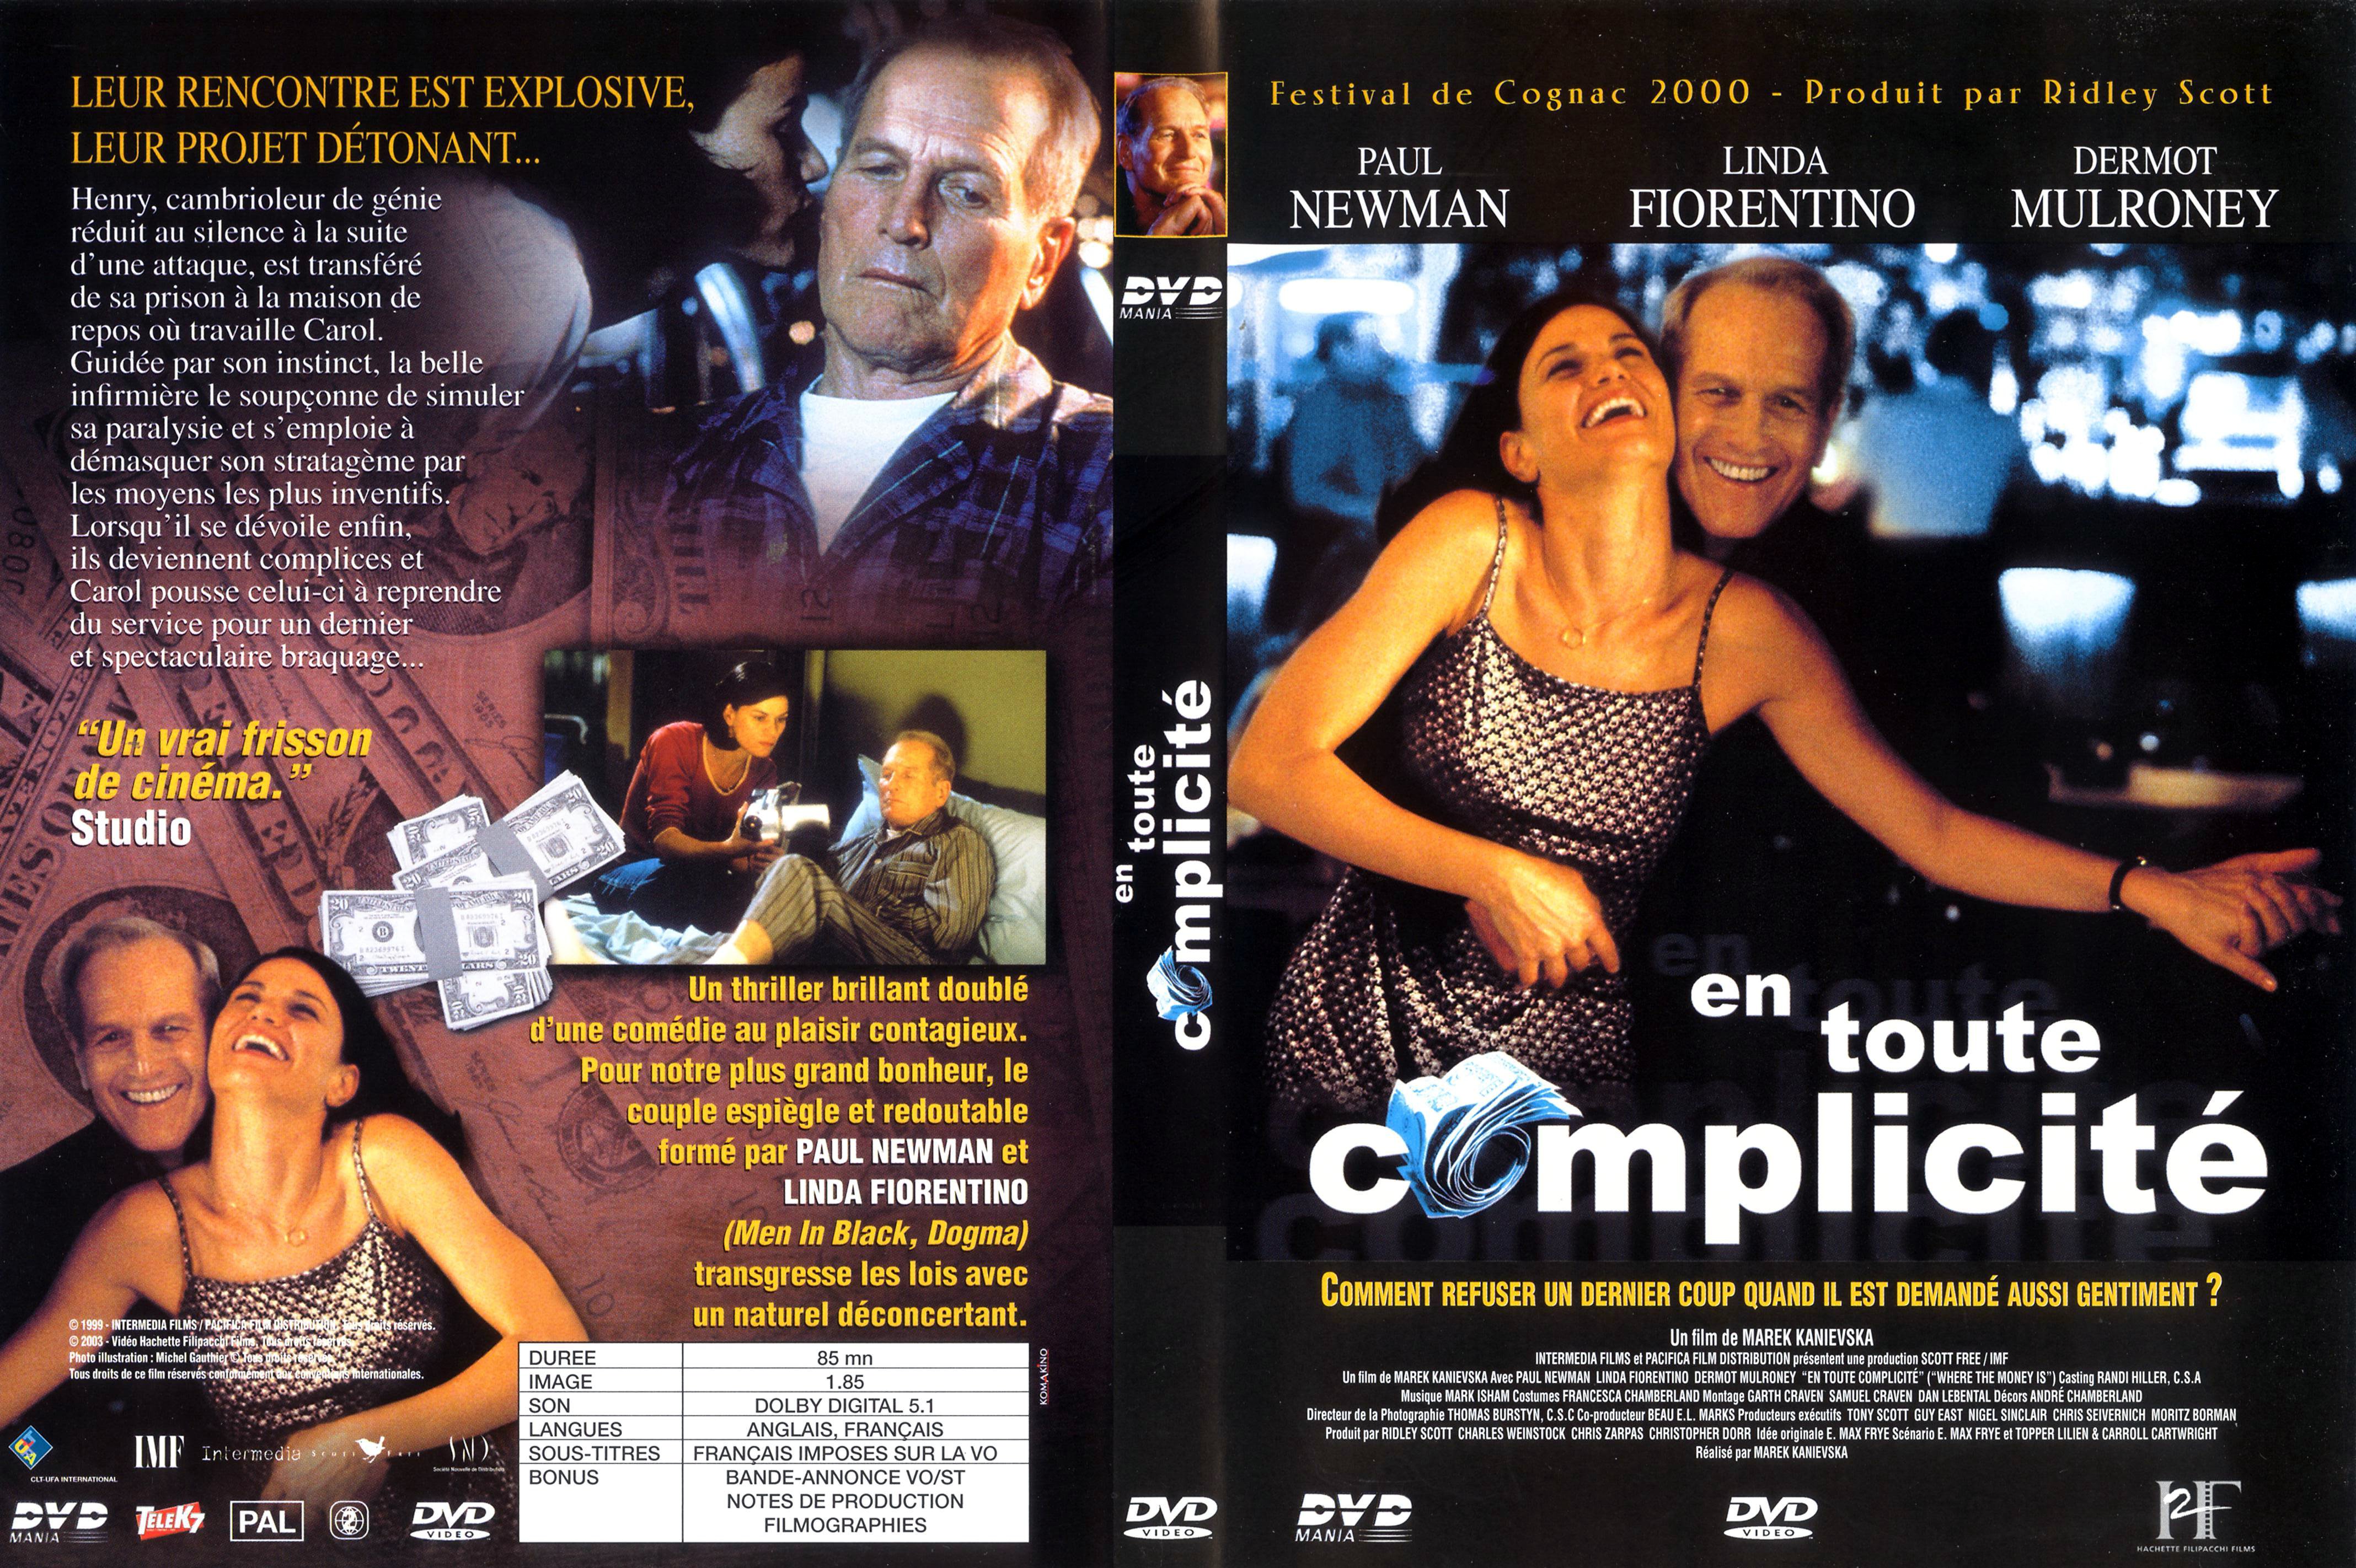 Jaquette Dvd De En Toute Complicité Cinéma Passion